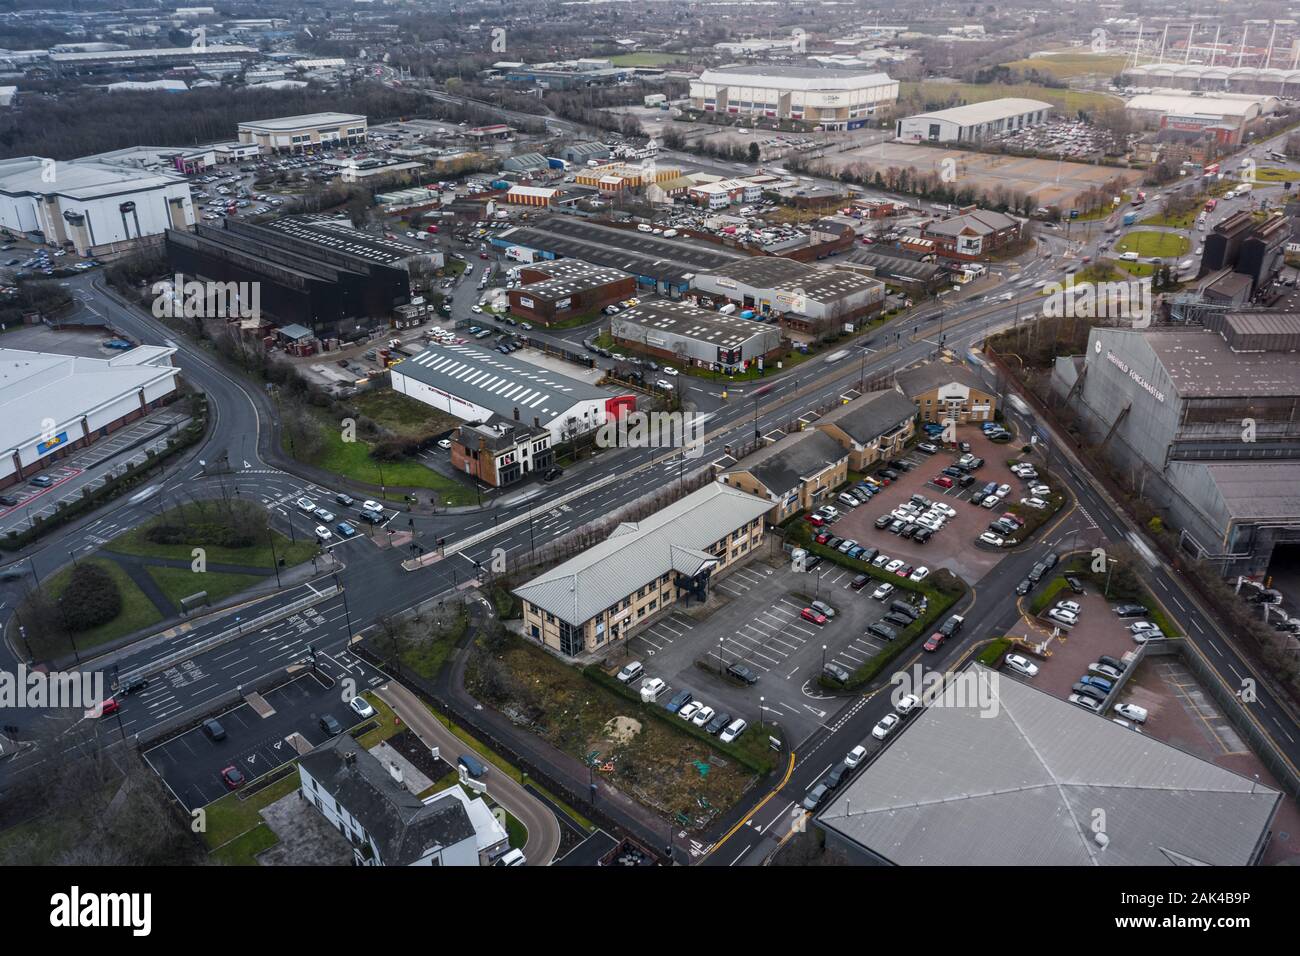 Sheffield, Reino Unido - 16 de diciembre de 2019: Vista aérea de Sheffield Arena, mostrando el cineworld, forgemasters, smyths y otros edificios comerciales Foto de stock